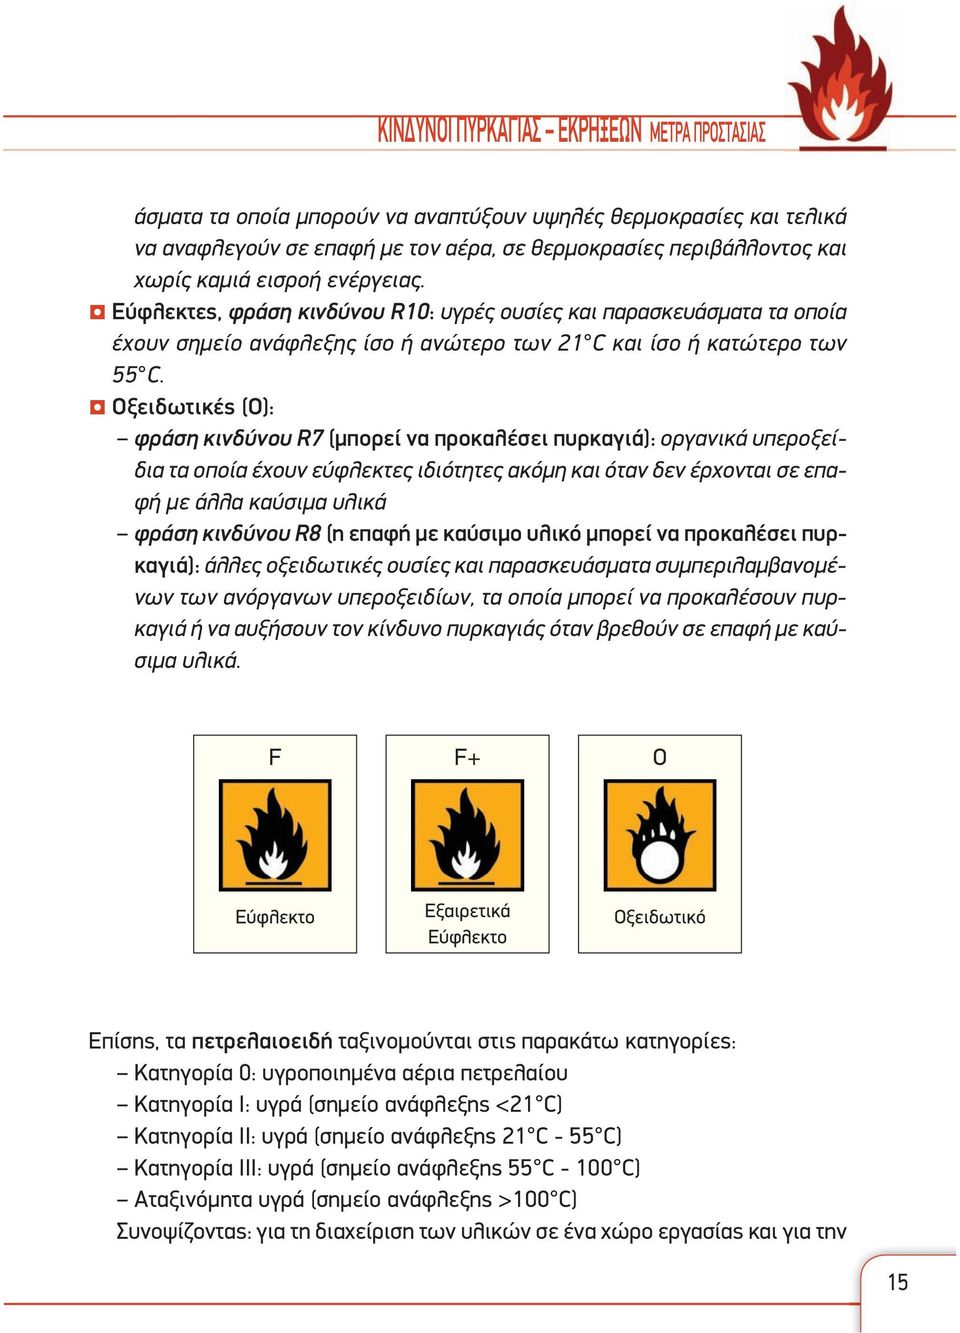 Οξειδωτικές (O): φράση κινδύνου R7 (μπορεί να προκαλέσει πυρκαγιά): οργανικά υπεροξείδια τα οποία έχουν εύφλεκτες ιδιότητες ακόμη και όταν δεν έρχονται σε επαφή με άλλα καύσιμα υλικά φράση κινδύνου